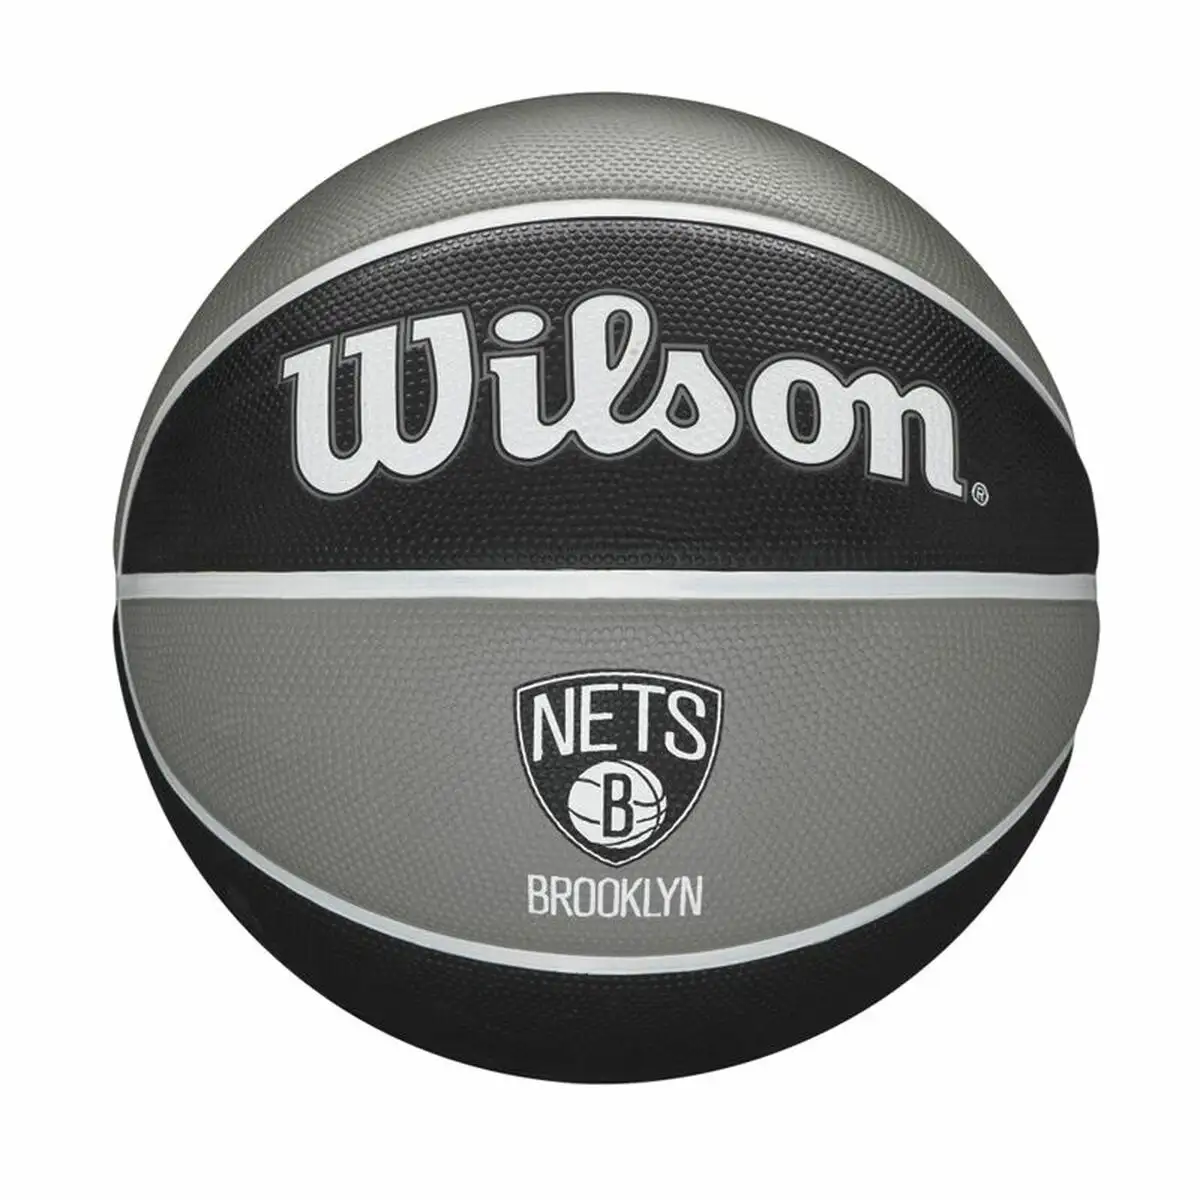 Ballon de basket wilson nba team tribute brooklyn nets noir caoutchouc taille unique 7_3032. Bienvenue sur DIAYTAR SENEGAL - Où le Shopping est une Affaire Personnelle. Découvrez notre sélection et choisissez des produits qui reflètent votre unicité et votre individualité.